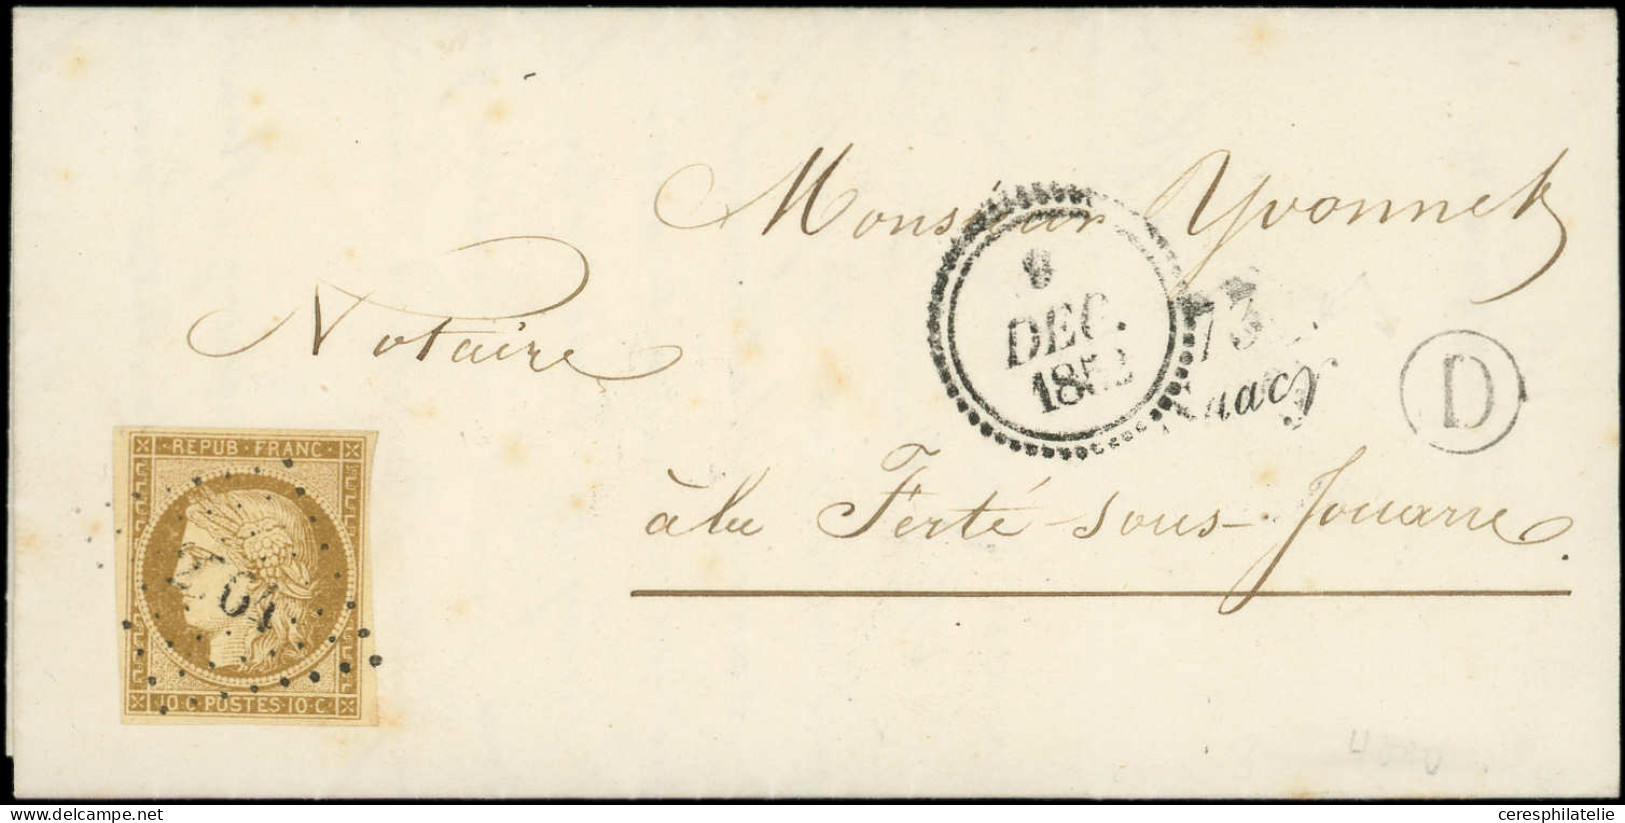 Let EMISSION DE 1849 - 1    10c. Bistre-jaune, Obl. PC 2764 S. LAC, Cursive 73/SAACY, Dateur B 9 DEC 1852, Boite D De PA - 1849-1876: Classic Period